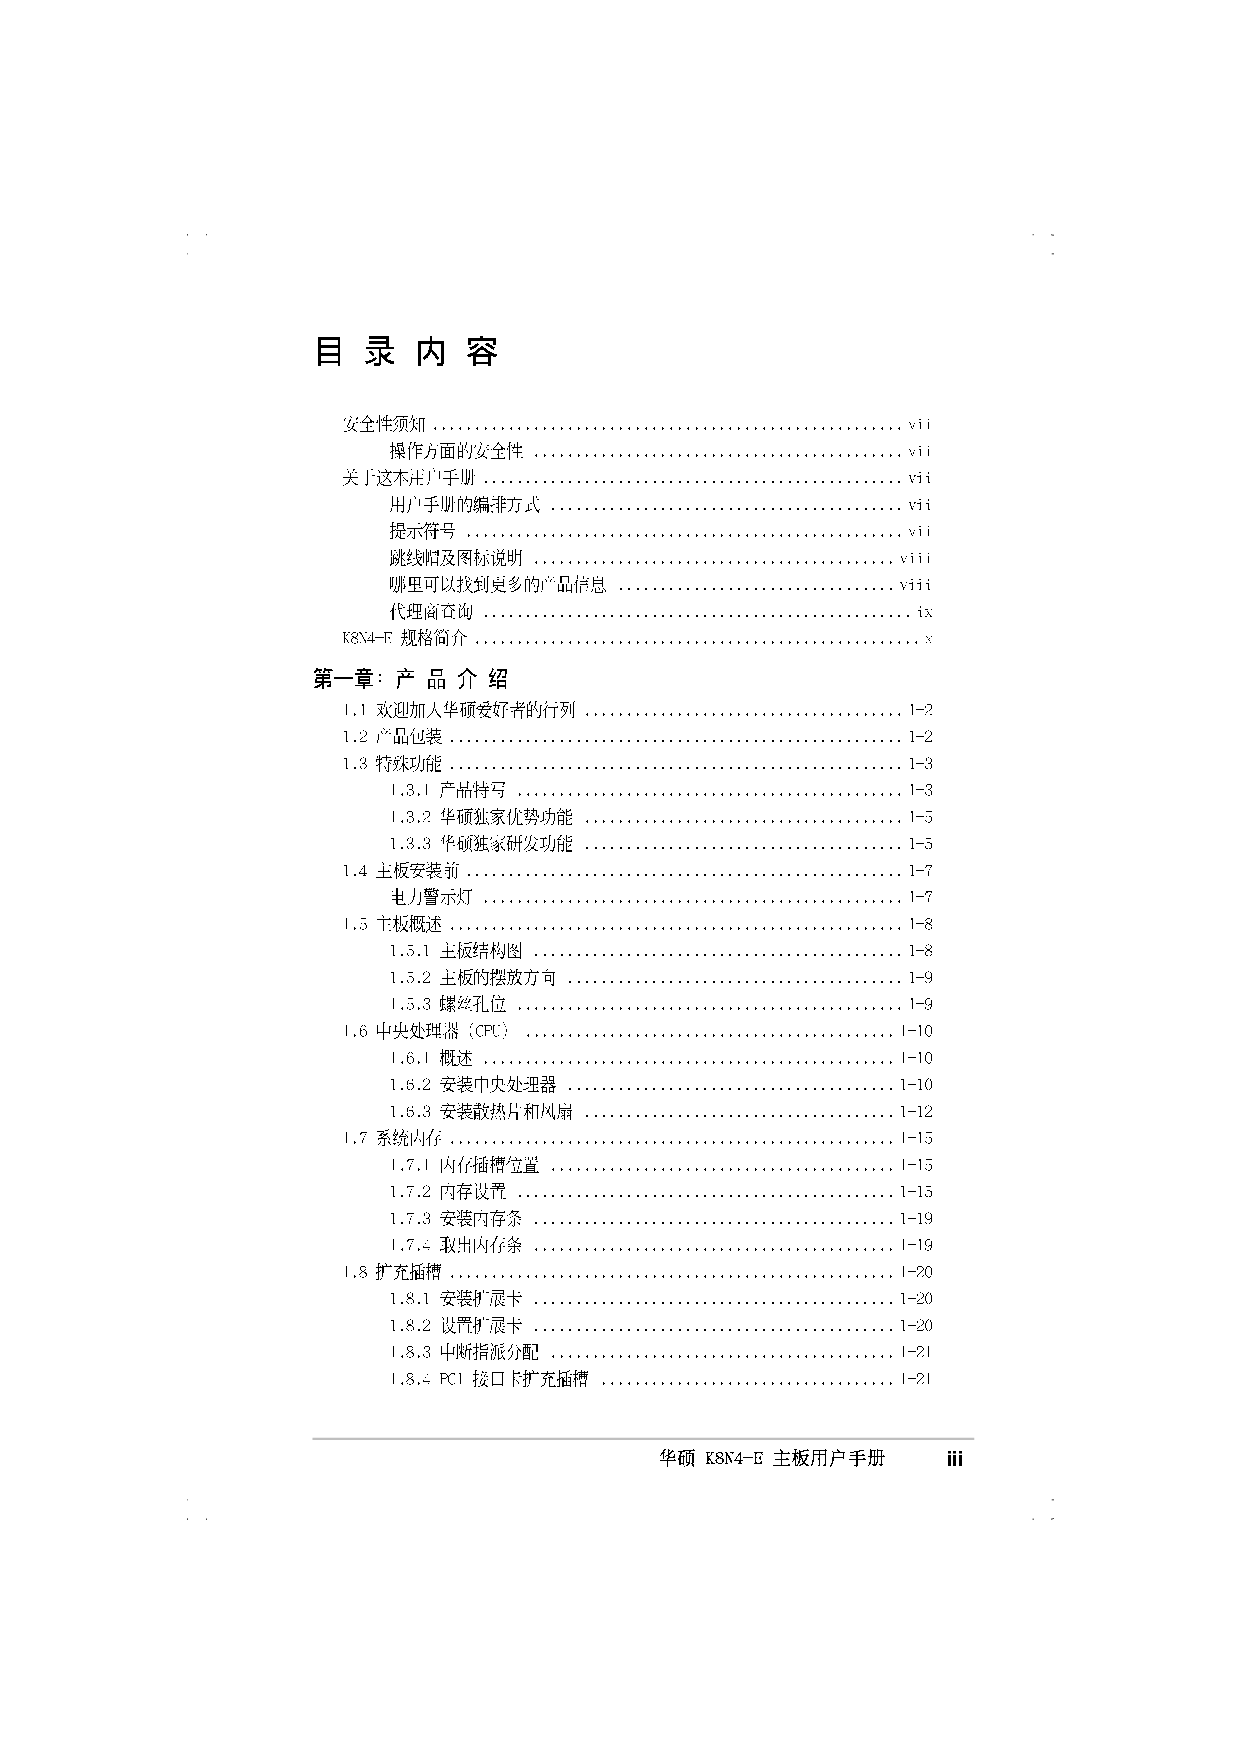 华硕 Asus K8N4-E 用户手册 第2页